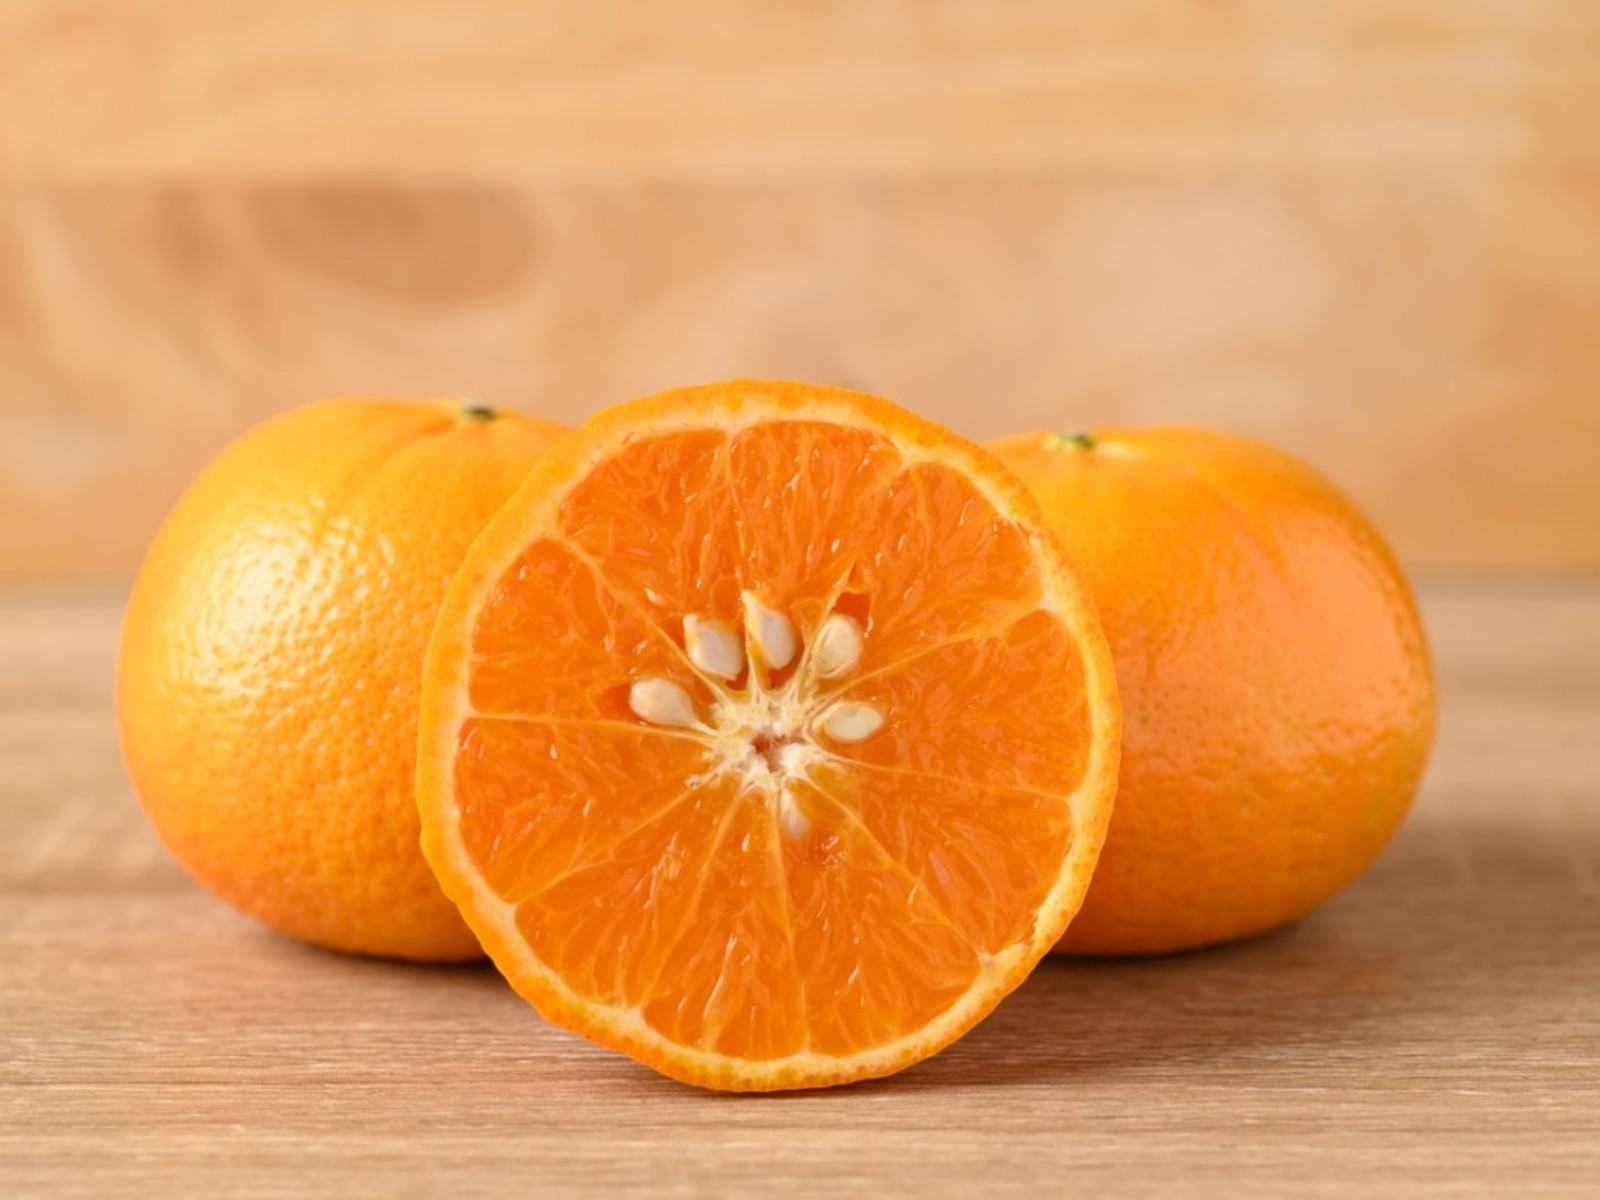 Mağazada Satın Alınan Portakalları Yetiştirebilir misiniz – Bakkal Portakal Tohumları Dikim